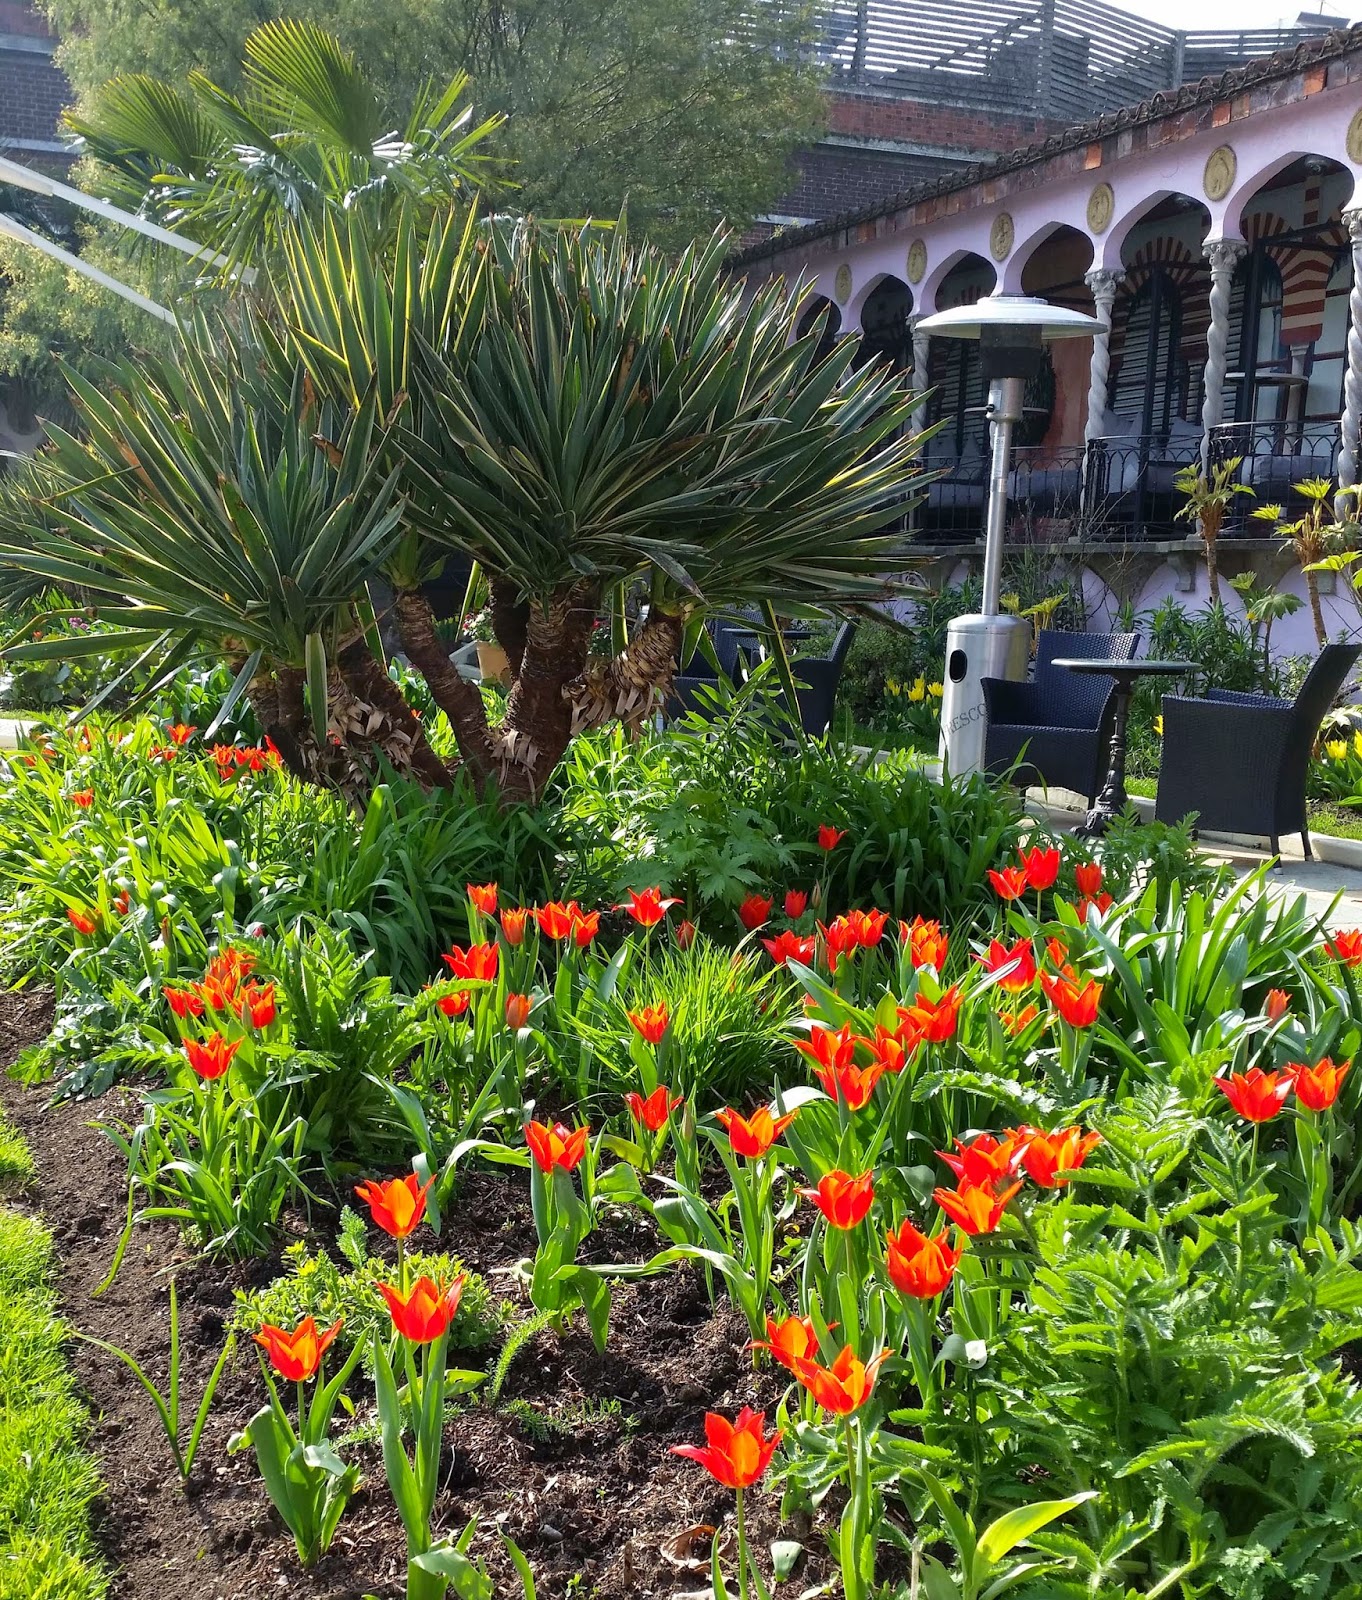 Kensington Roof Garden, London. Spanish Garden